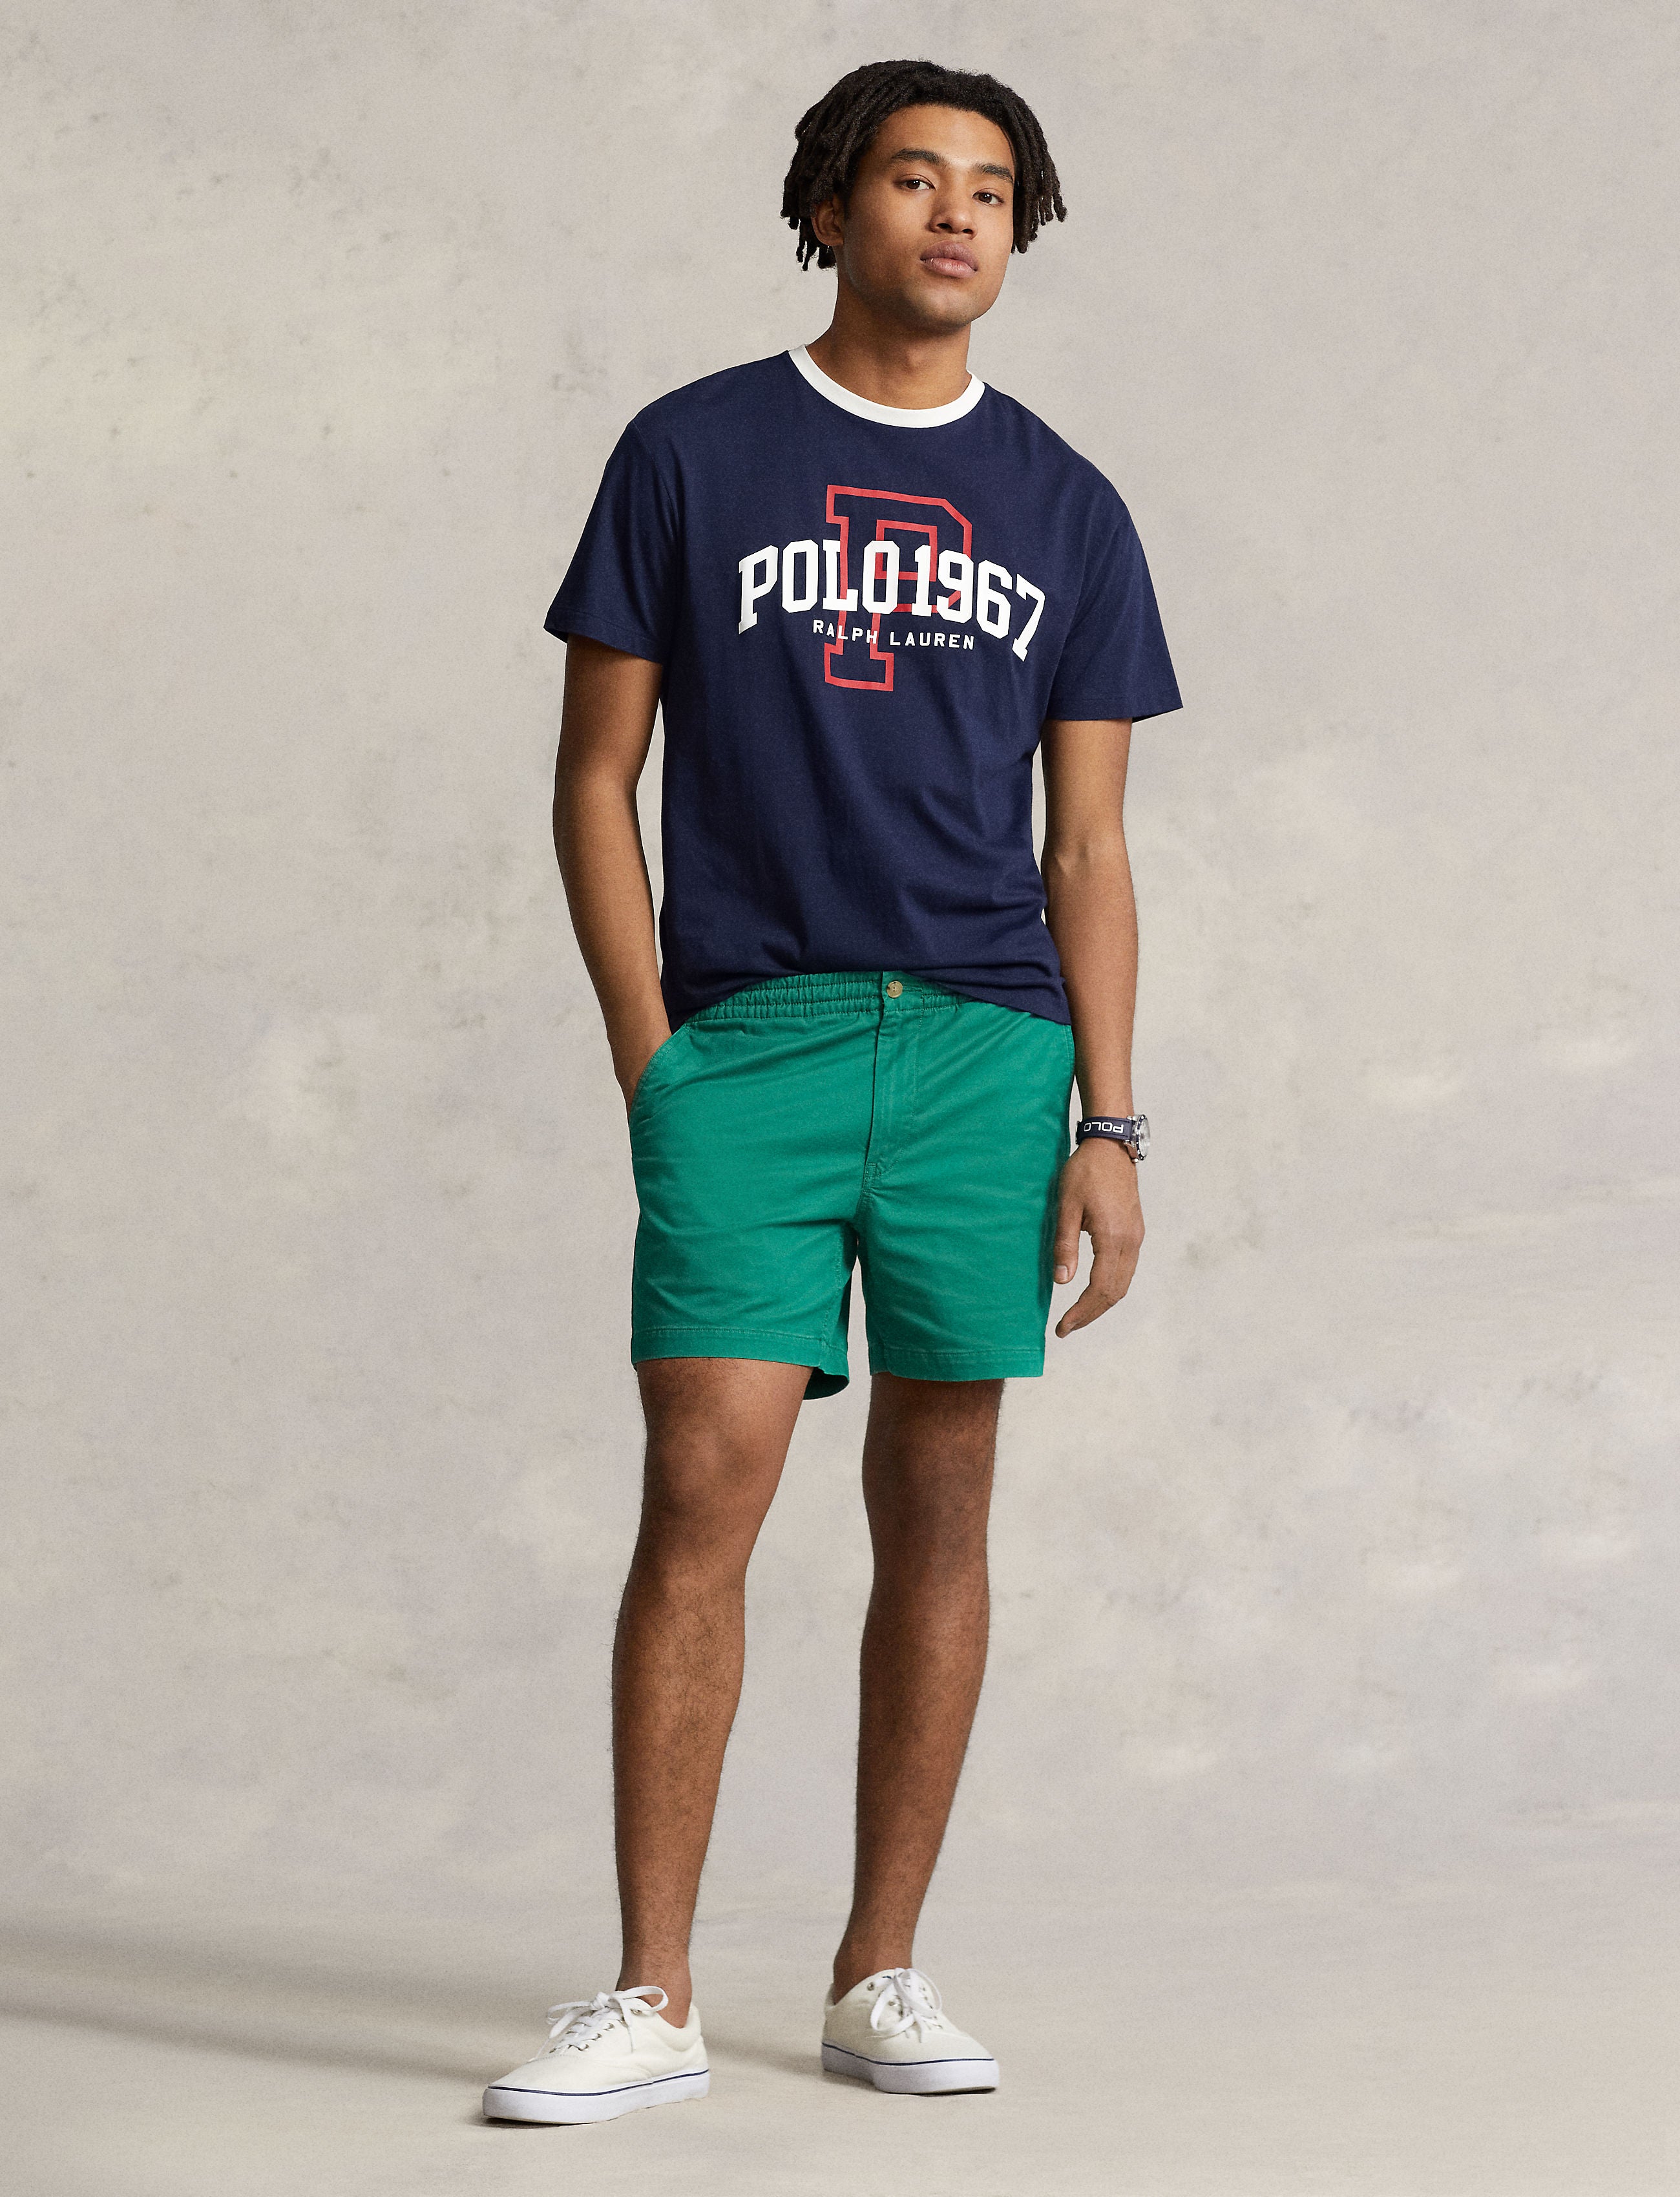 Polo Ralph Lauren Tee Shirt - Logo Jersey Tee Shirt